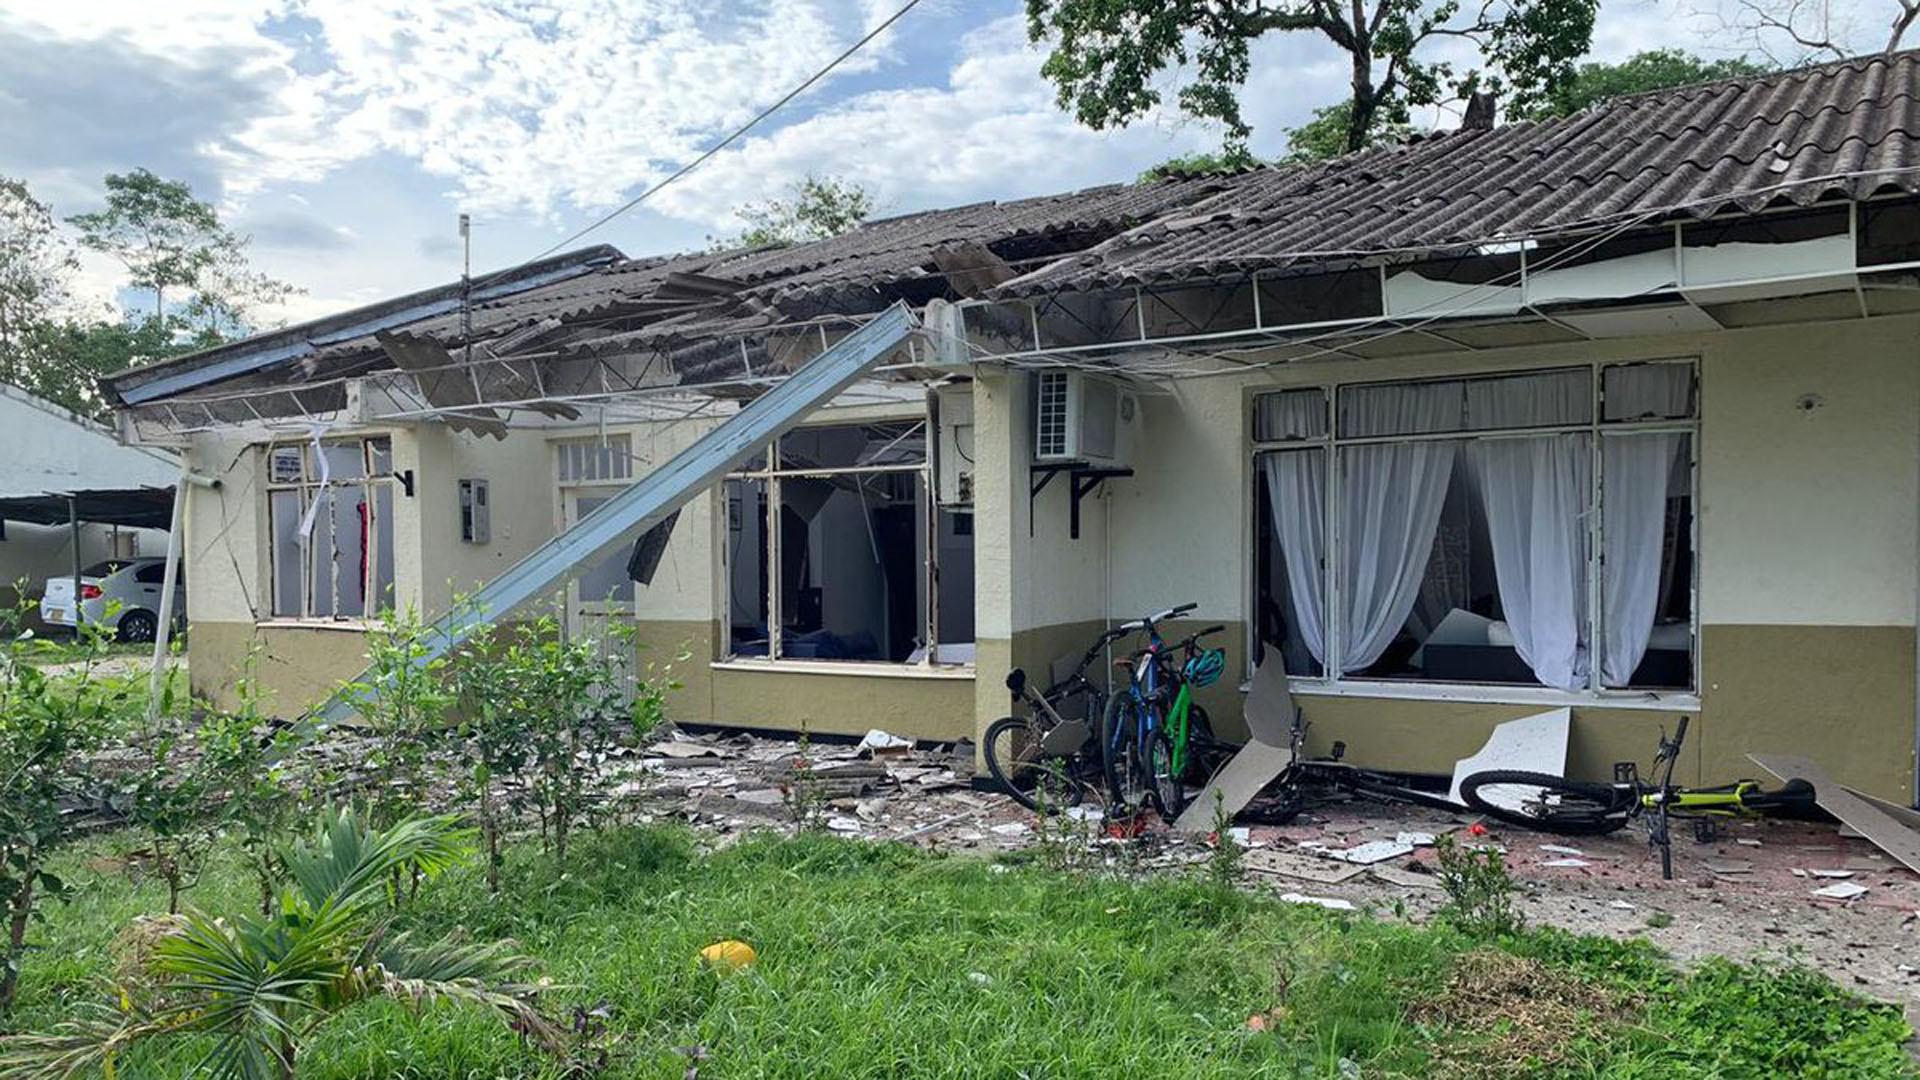  Con explosivos ELN intentó atacar las tropas cerca de una escuela y viviendas en Arauca